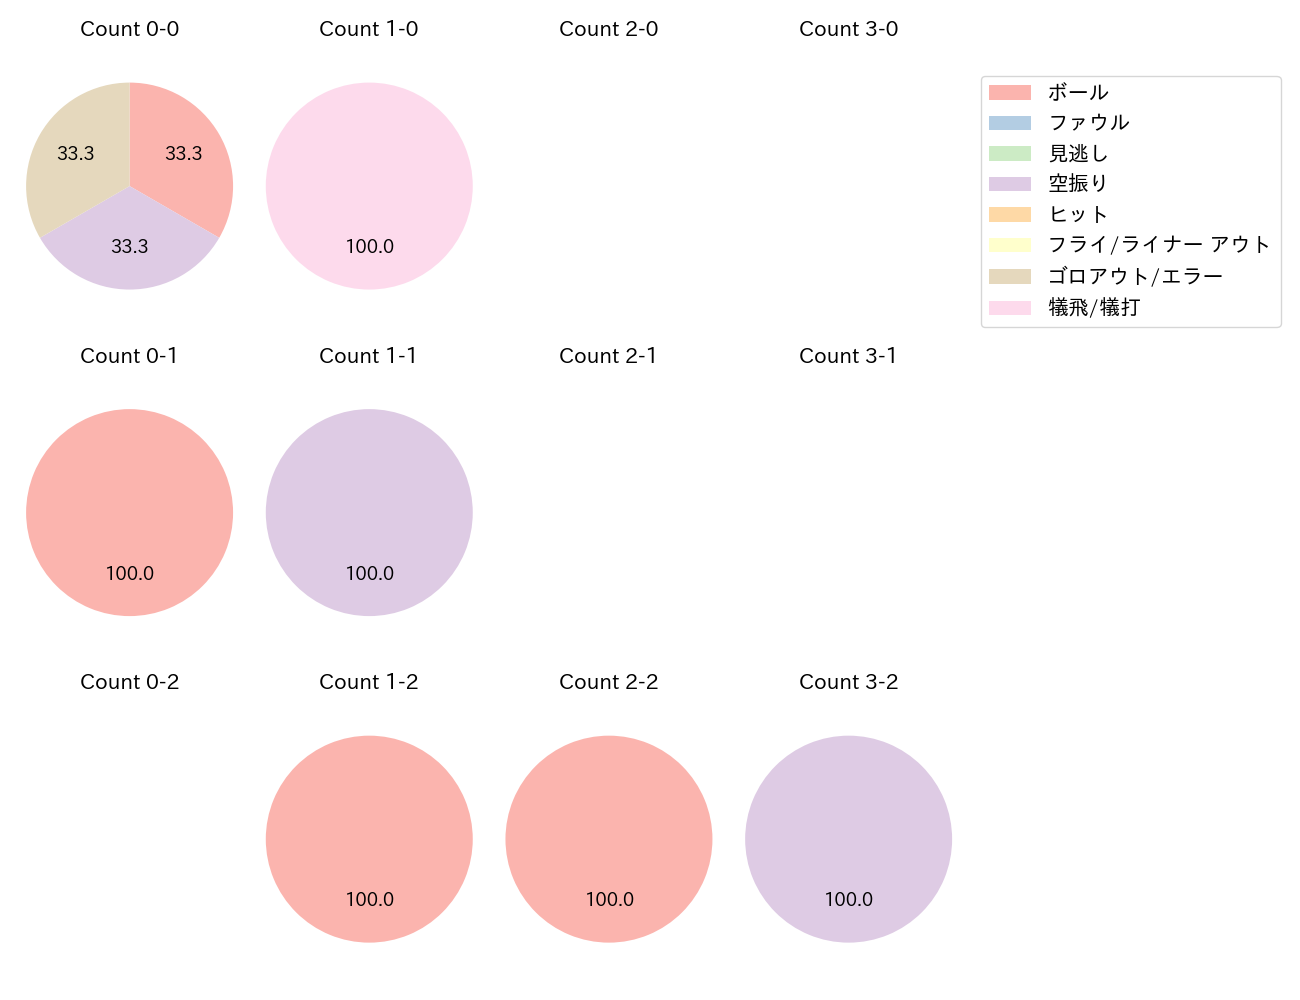 武田 翔太の球数分布(2021年6月)